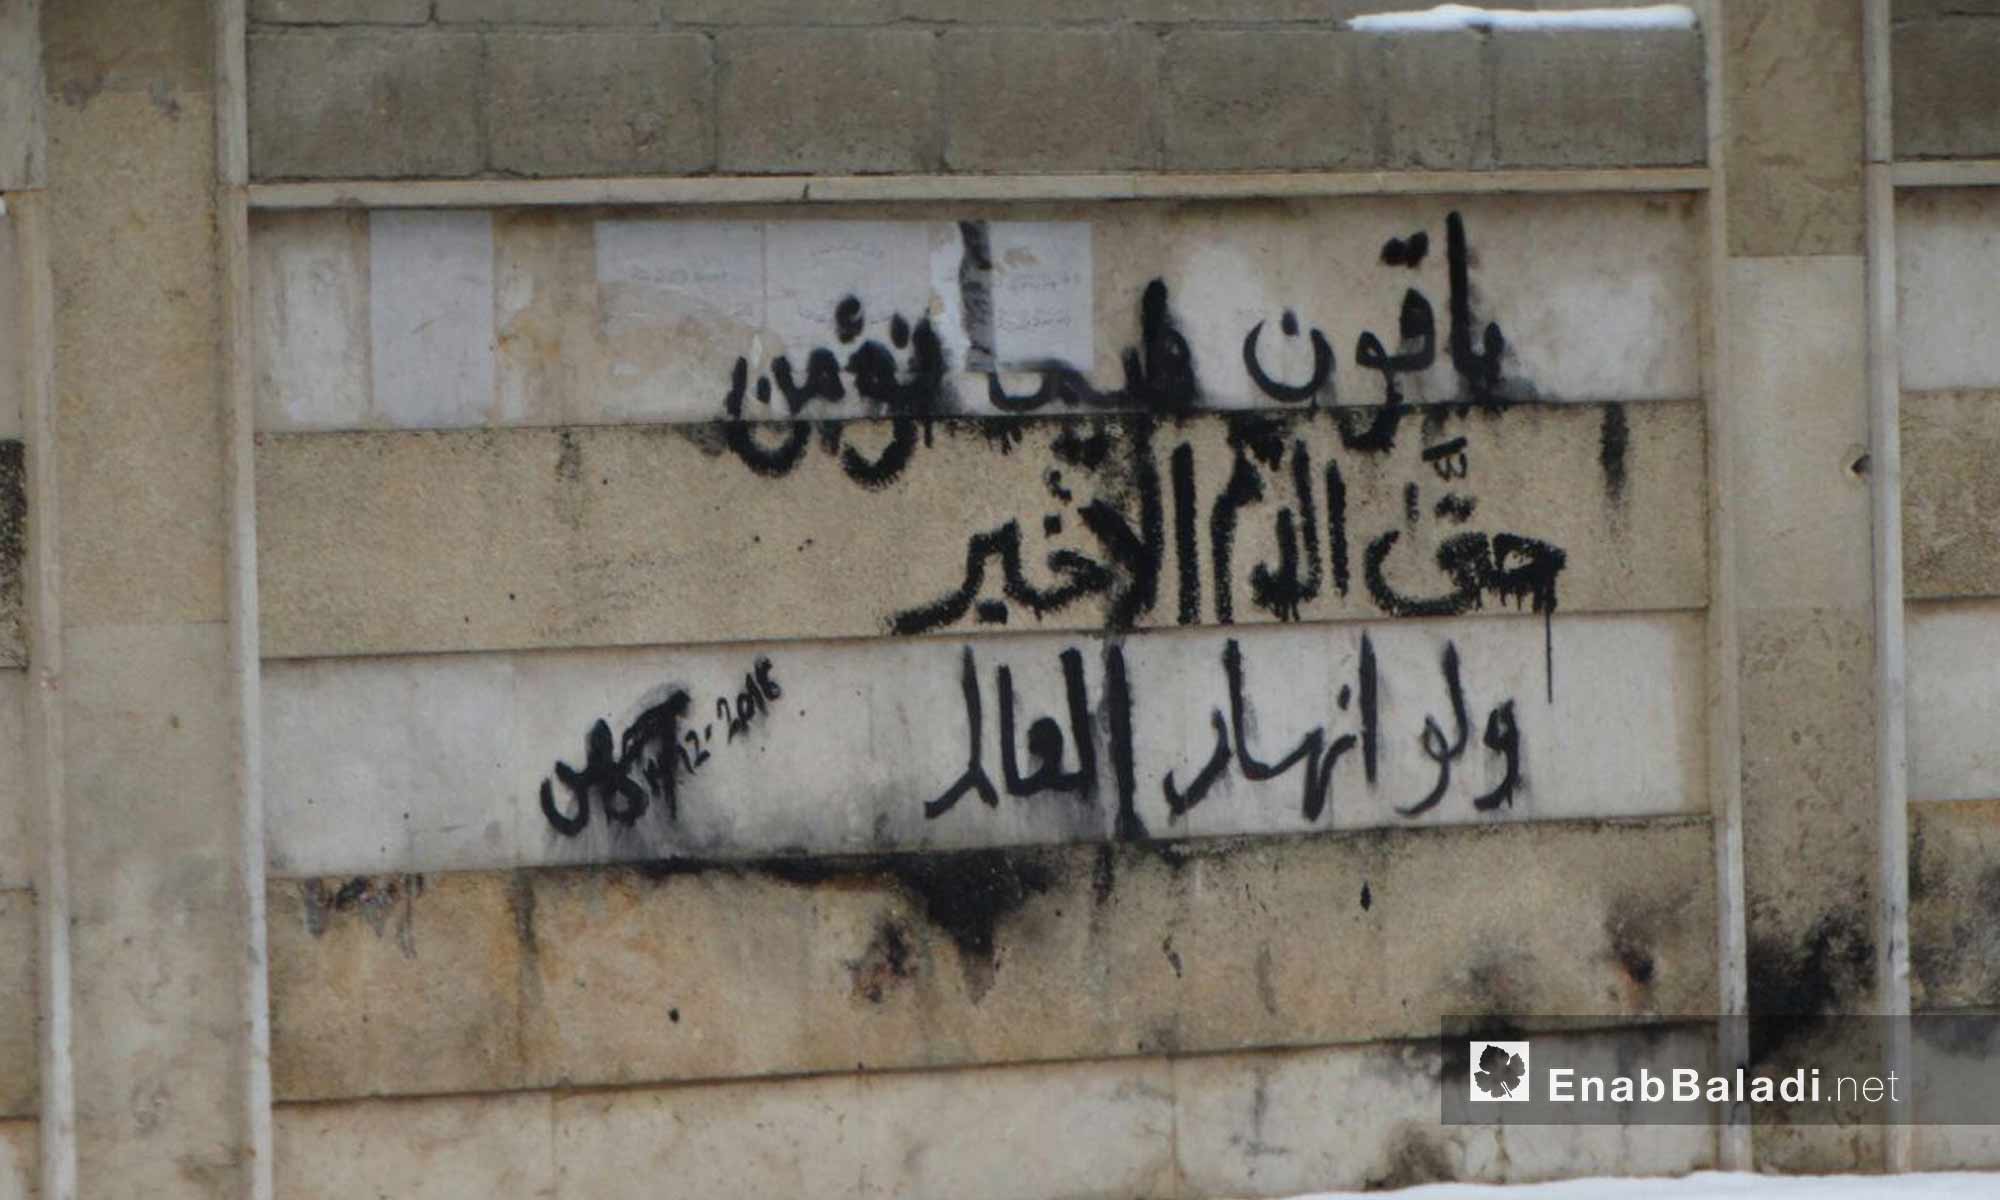 كتابات أهالي  الوعر على جدران حيهم_28 كانون الثاني_(عنب بلدي)